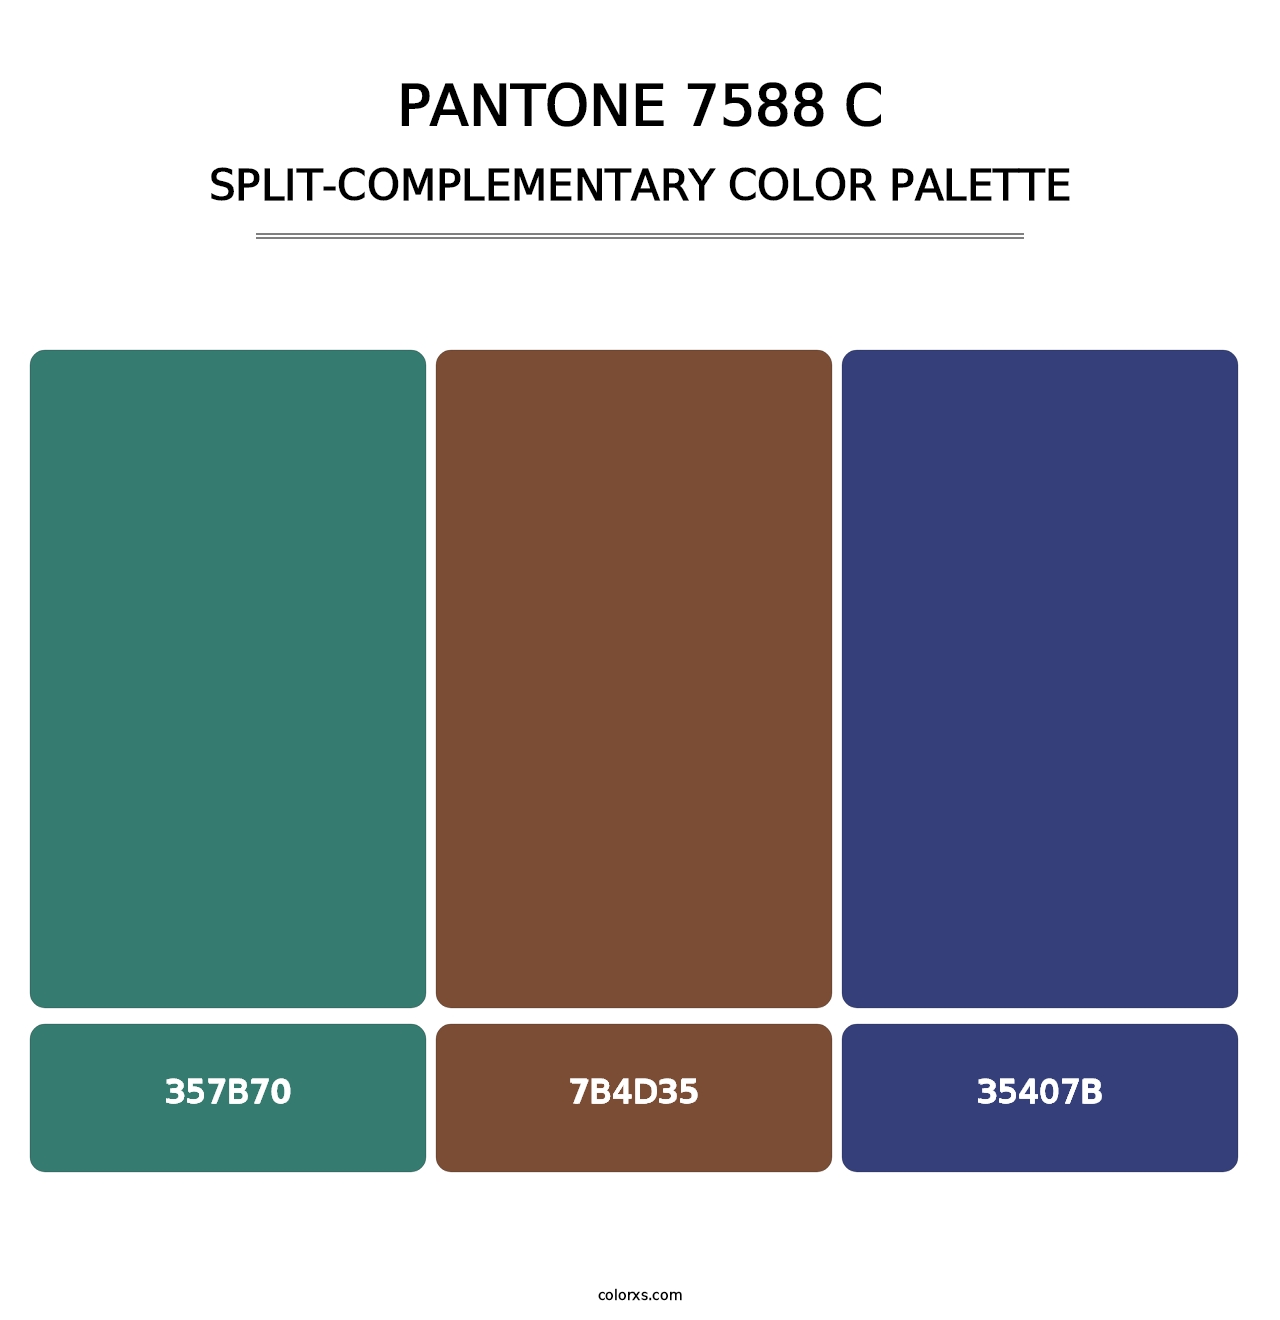 PANTONE 7588 C - Split-Complementary Color Palette